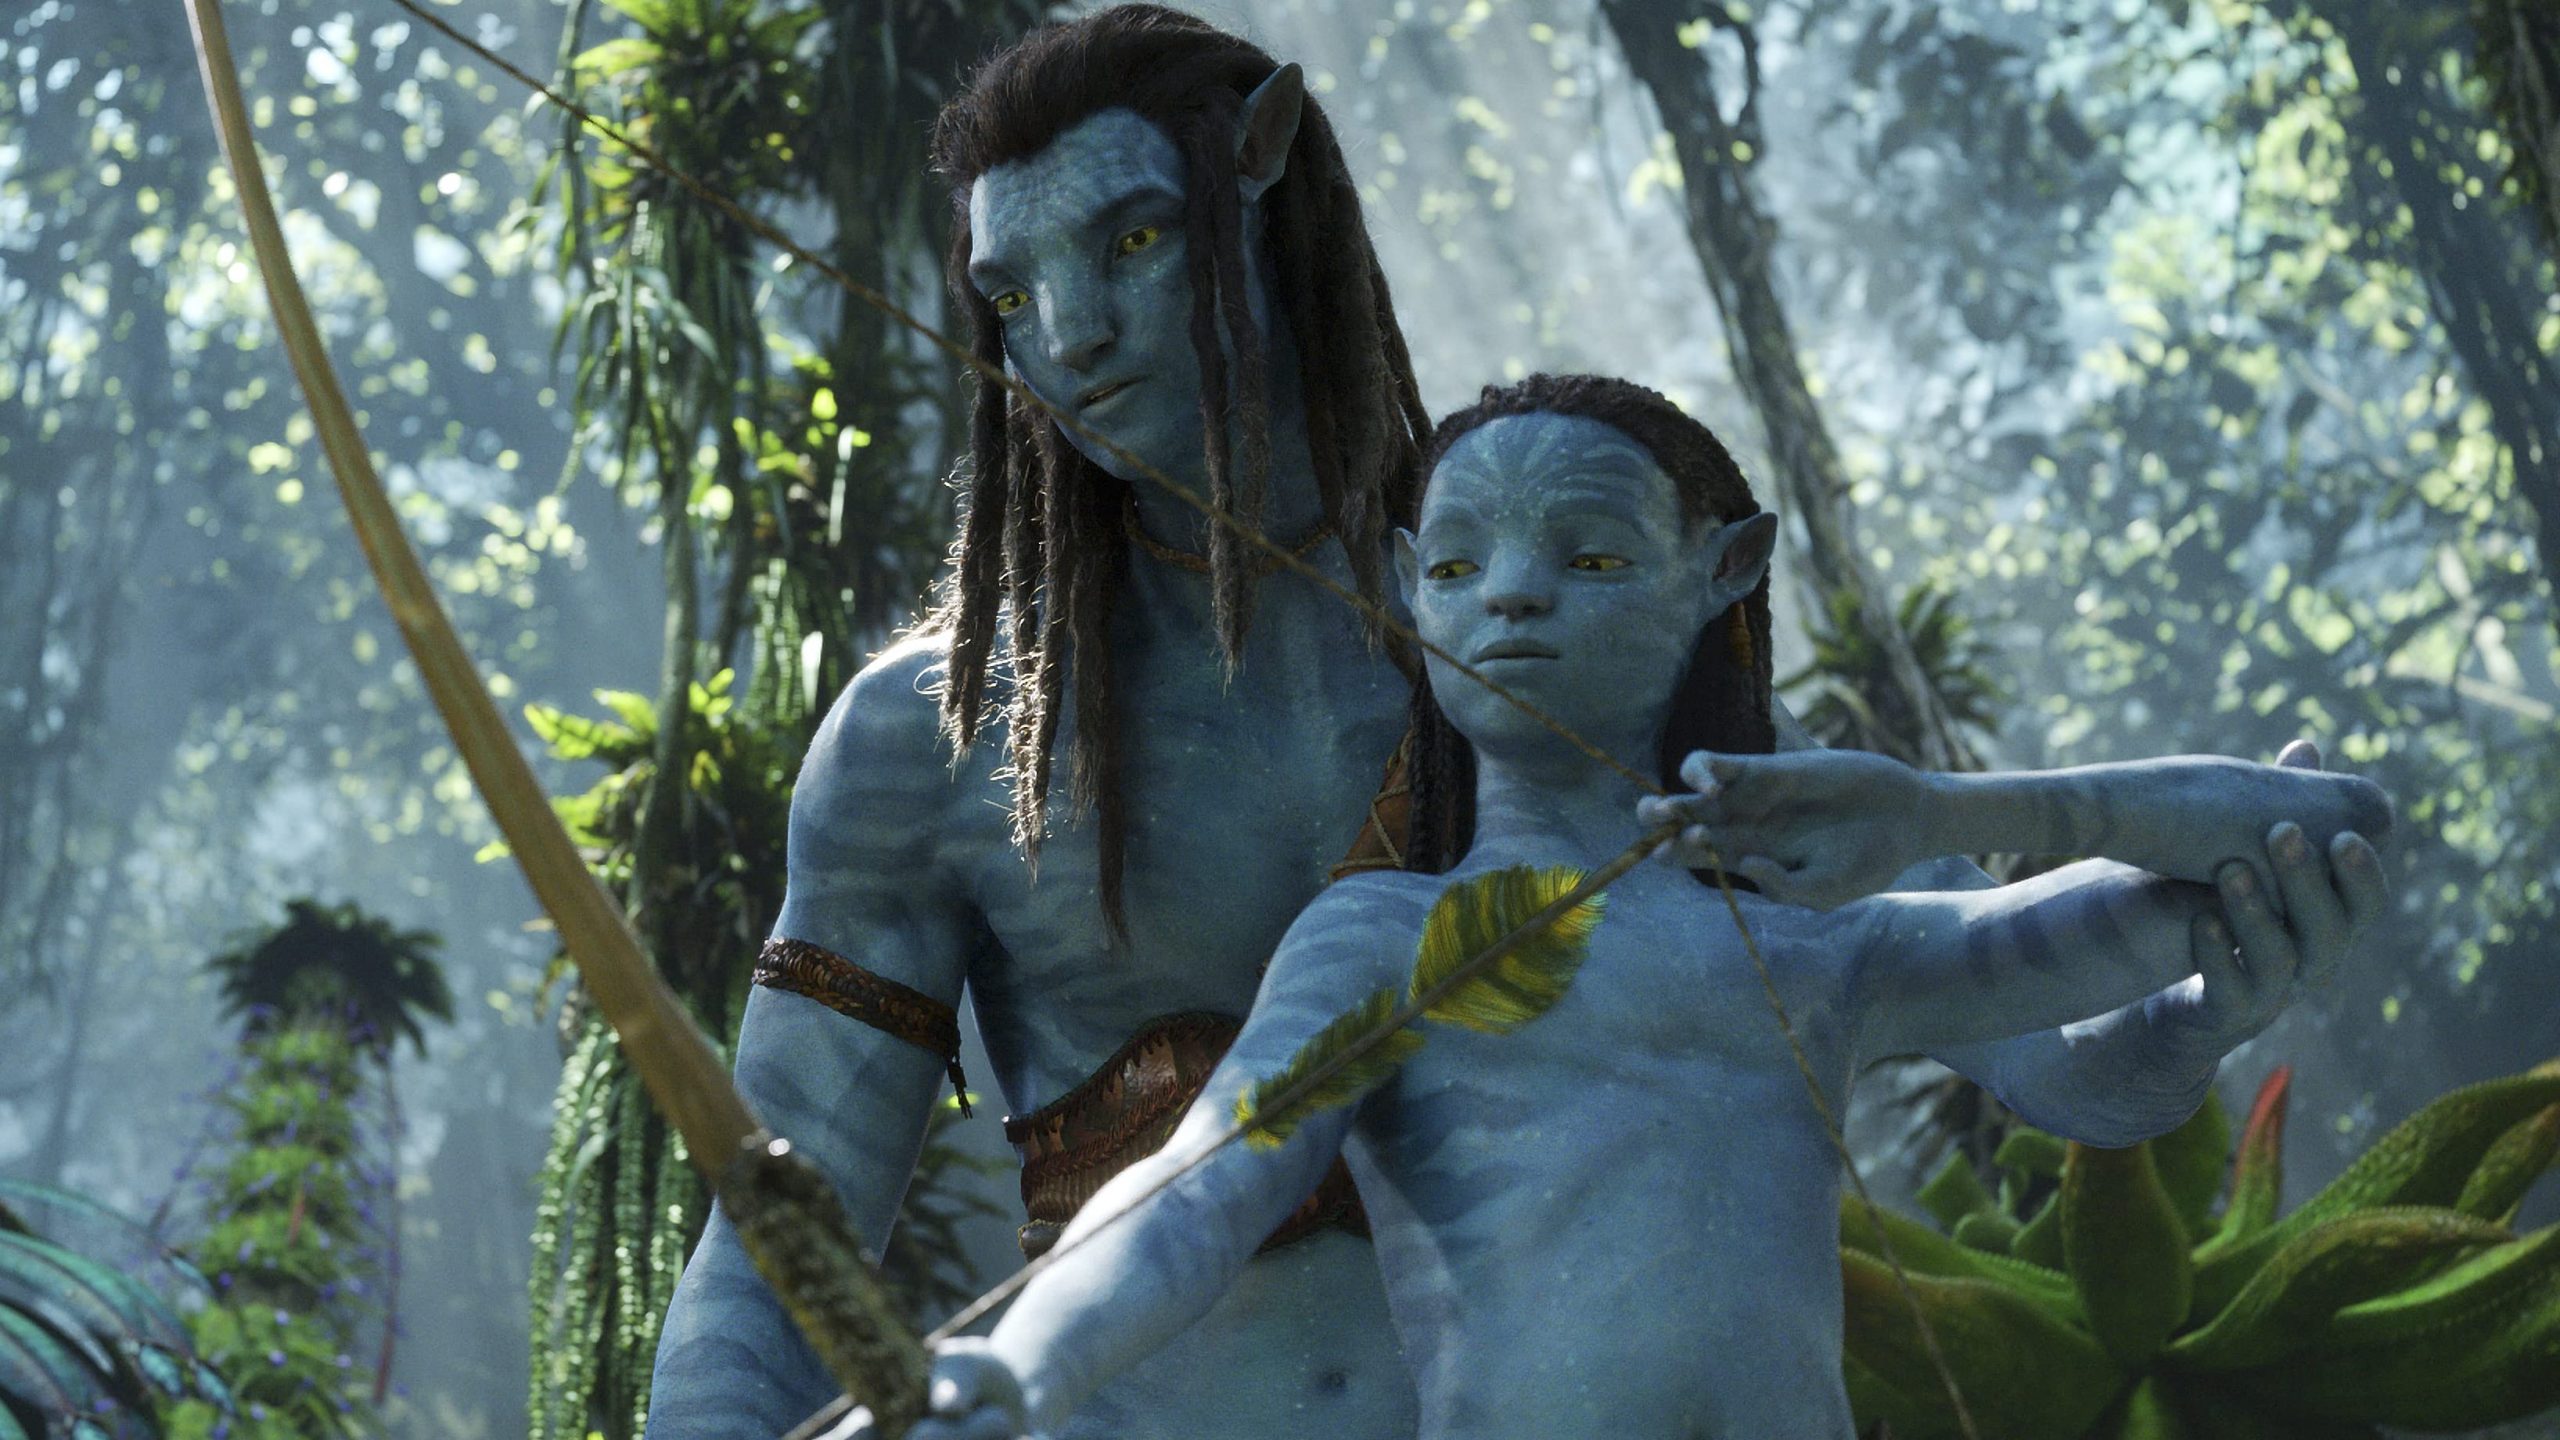 Avatar 2 hứa hẹn sẽ là một siêu phẩm đáng mong đợi cuối năm này. Sau 12 năm chờ đợi, fan hâm mộ sẽ được trở lại với thế giới Pandora trong tác phẩm của đạo diễn James Cameron. Với chất lượng hình ảnh và kỹ xảo sống động, Avatar 2 chắc chắn sẽ là một trải nghiệm đáng nhớ cho mọi người.